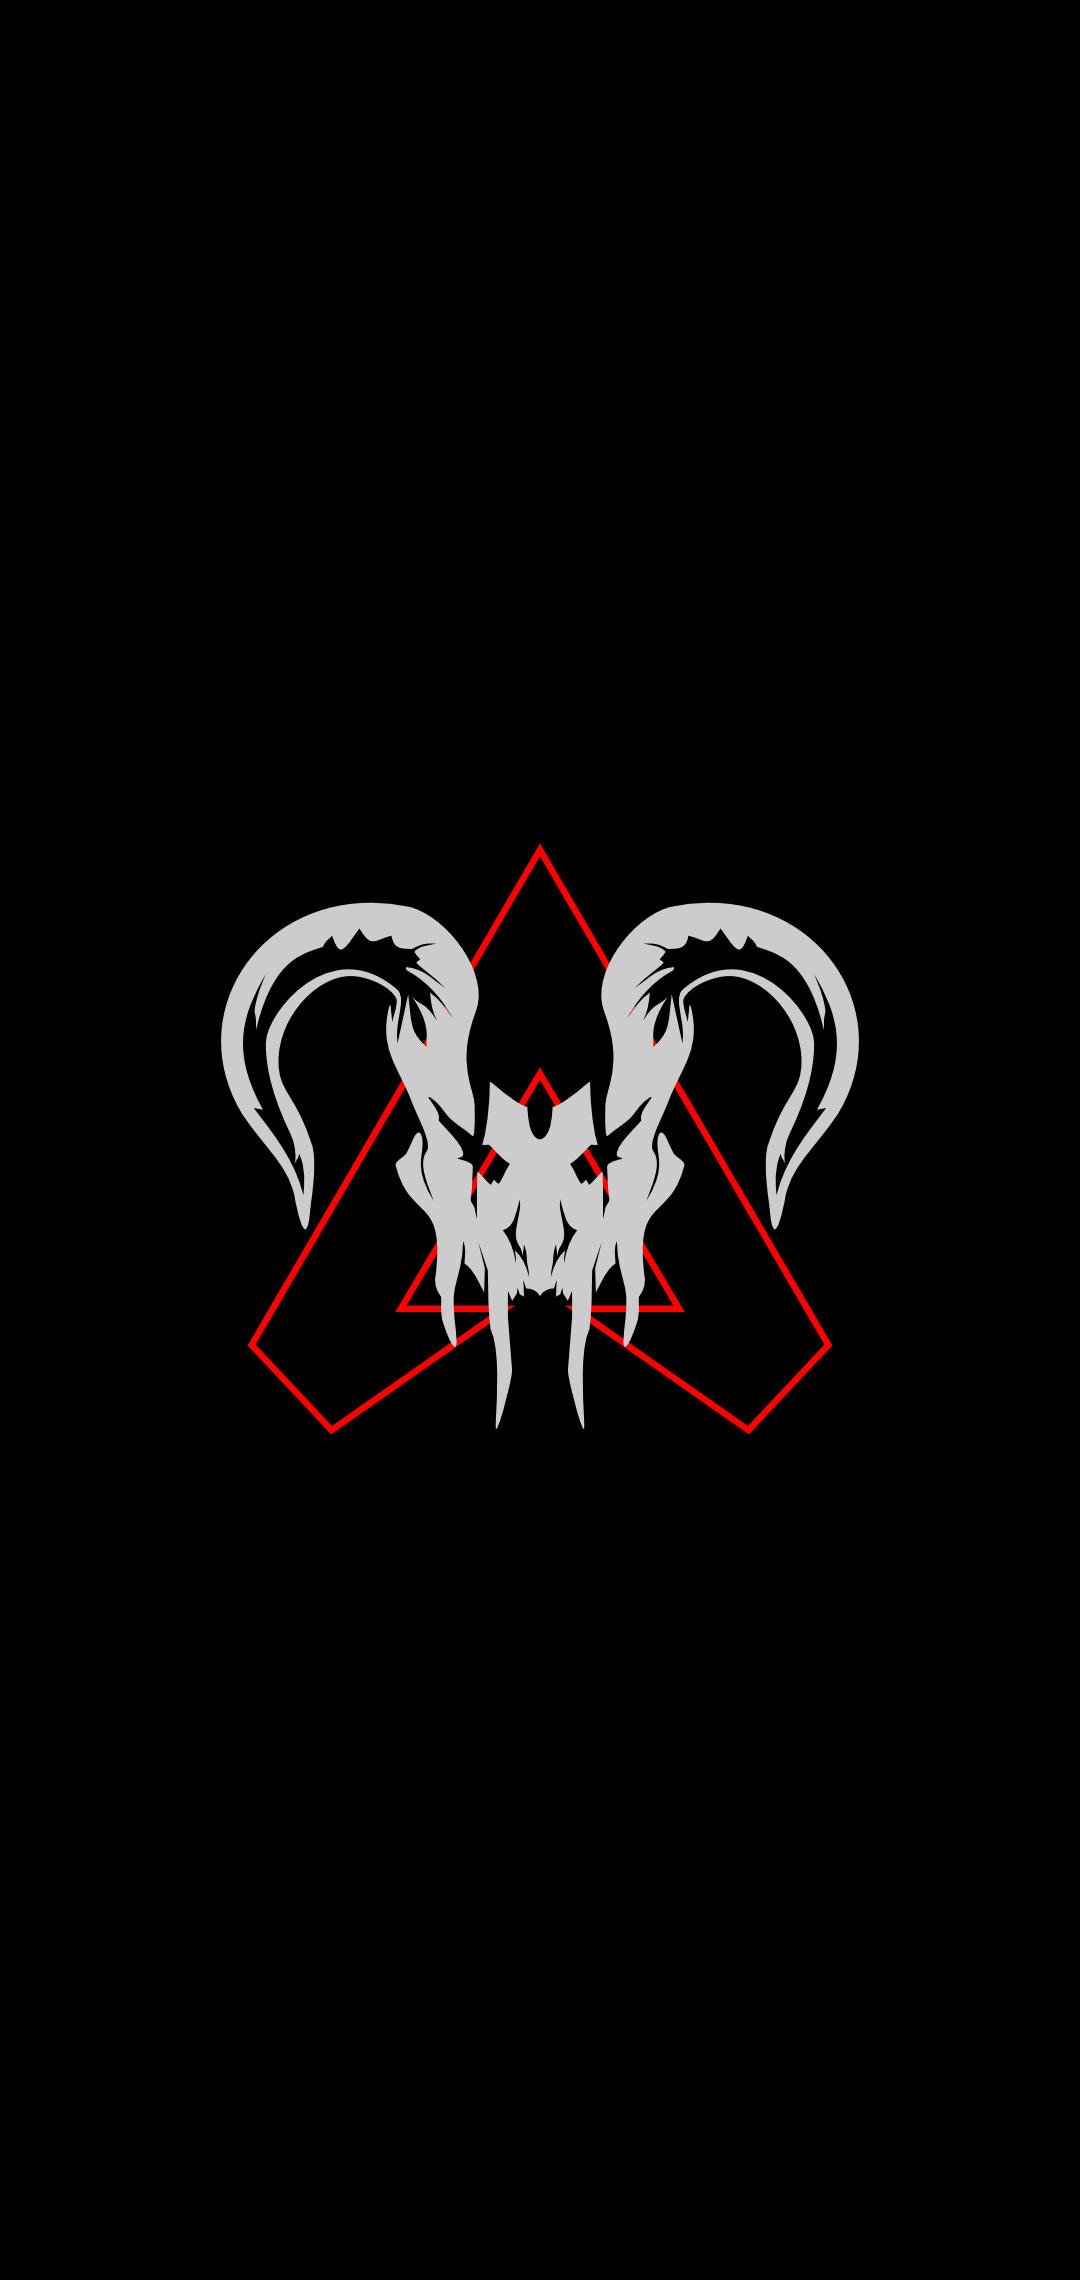 Apex Legends かっこいいプレデターのロゴ Predator Logo Aquos R2 Compact 壁紙 待ち受け Sumaran